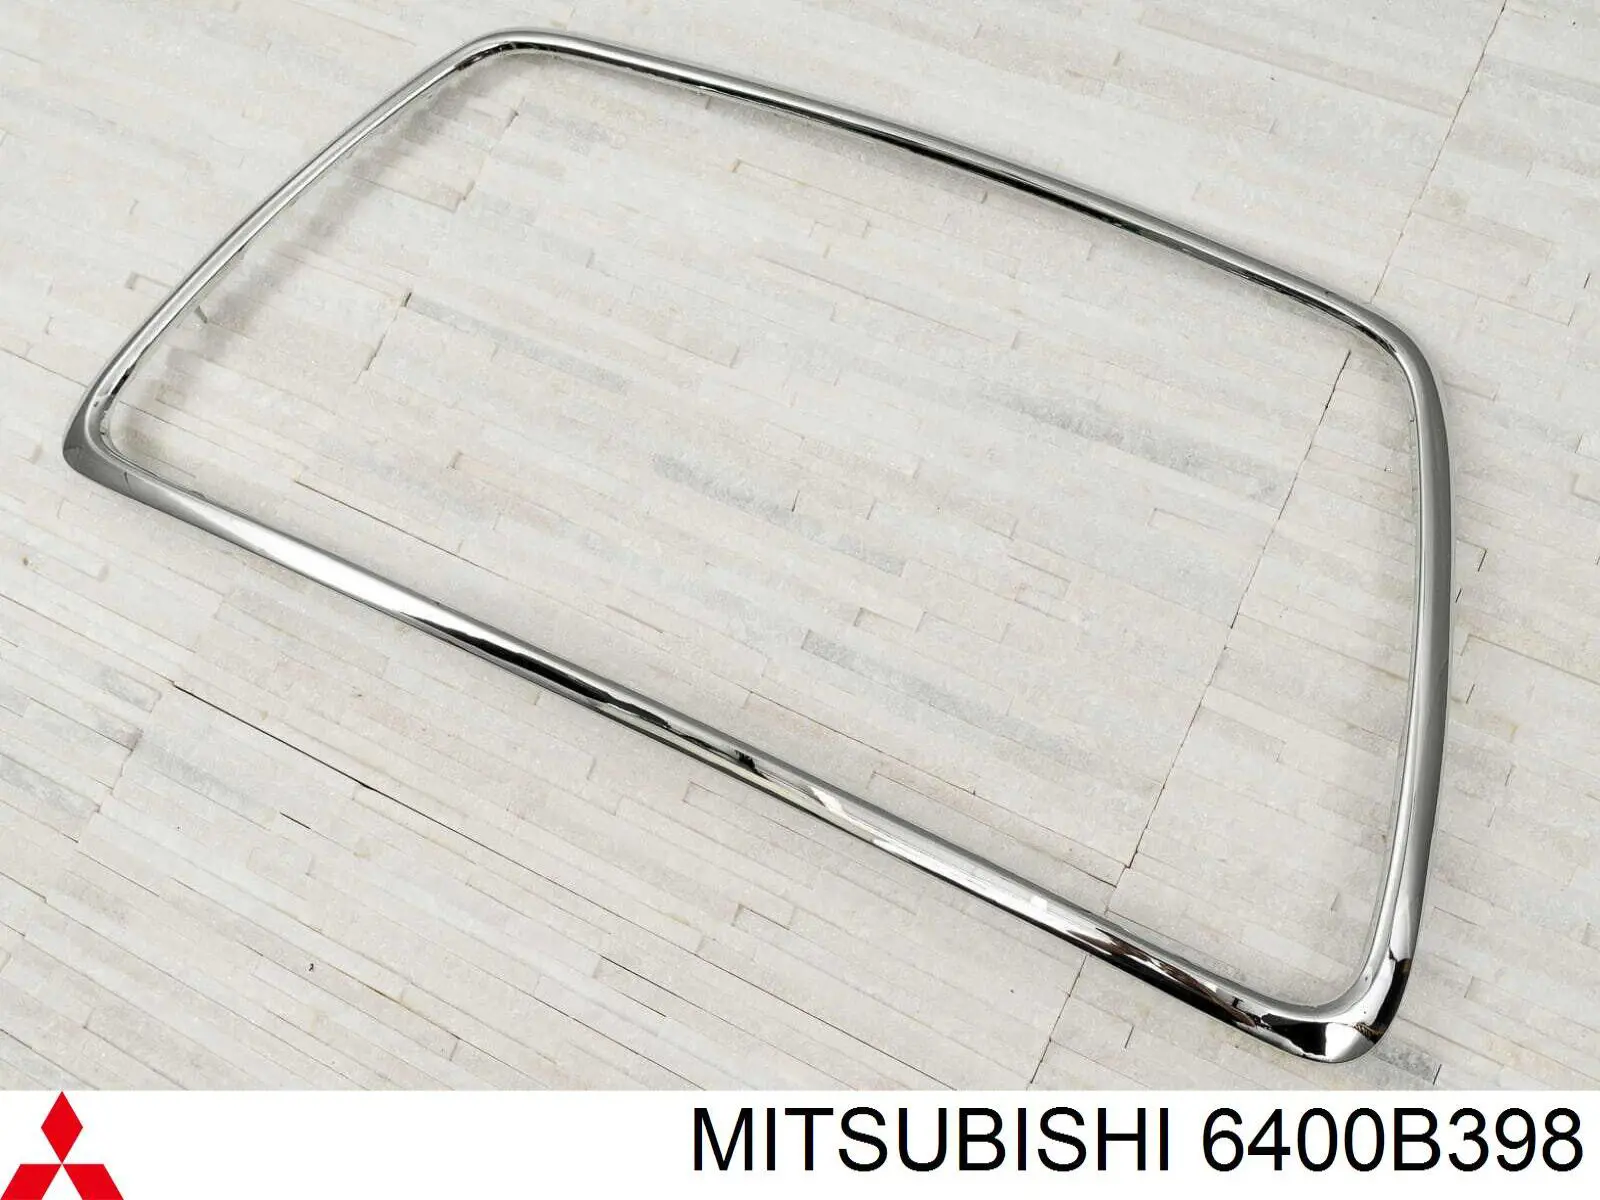 6400B398 Mitsubishi superposicion (molde De Rejilla Del Radiador)